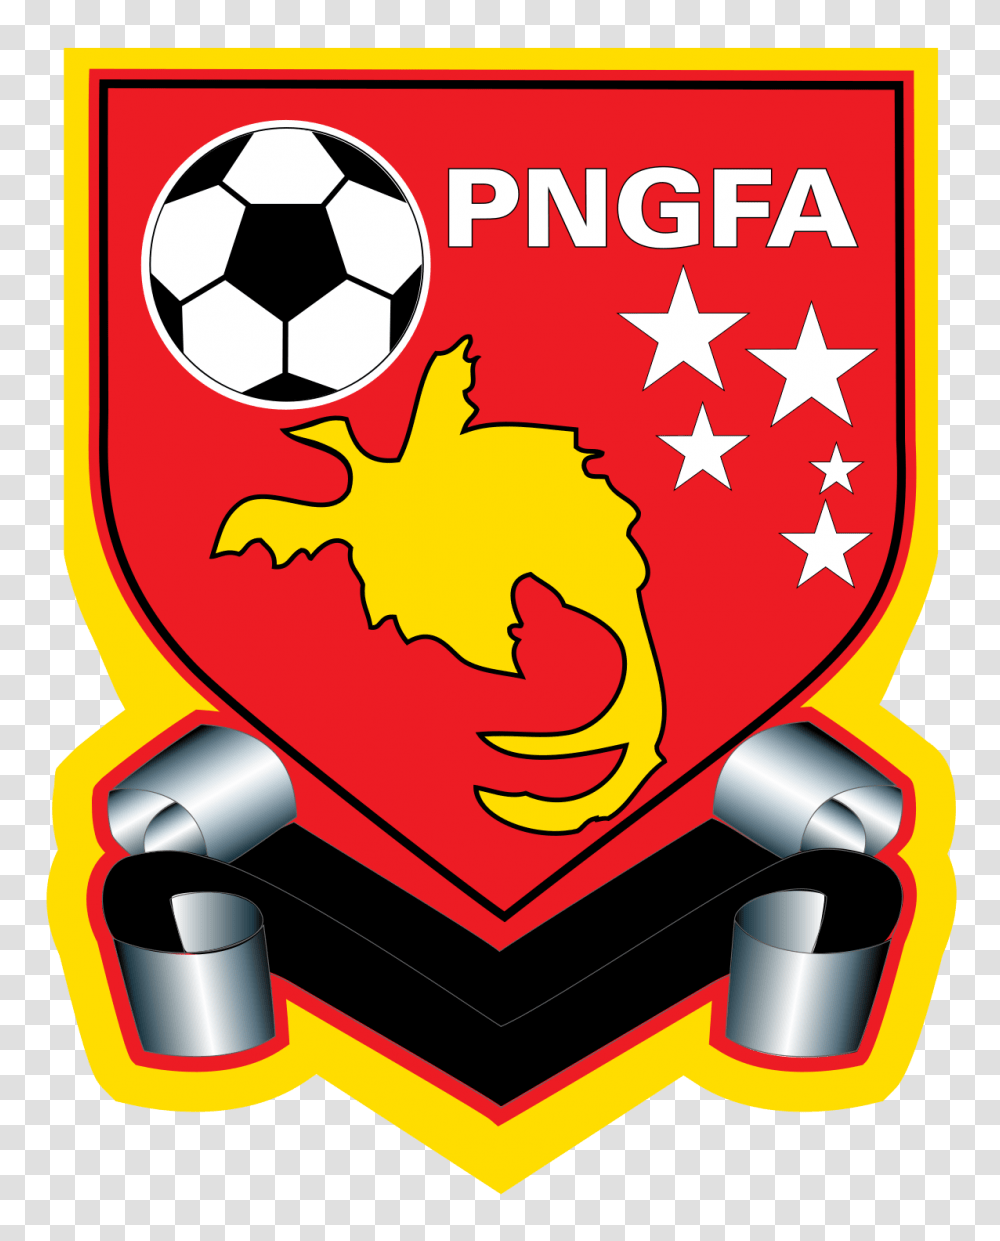 Papua New Guinea National Football Team, Soccer Ball, Team Sport, Advertisement, Poster Transparent Png